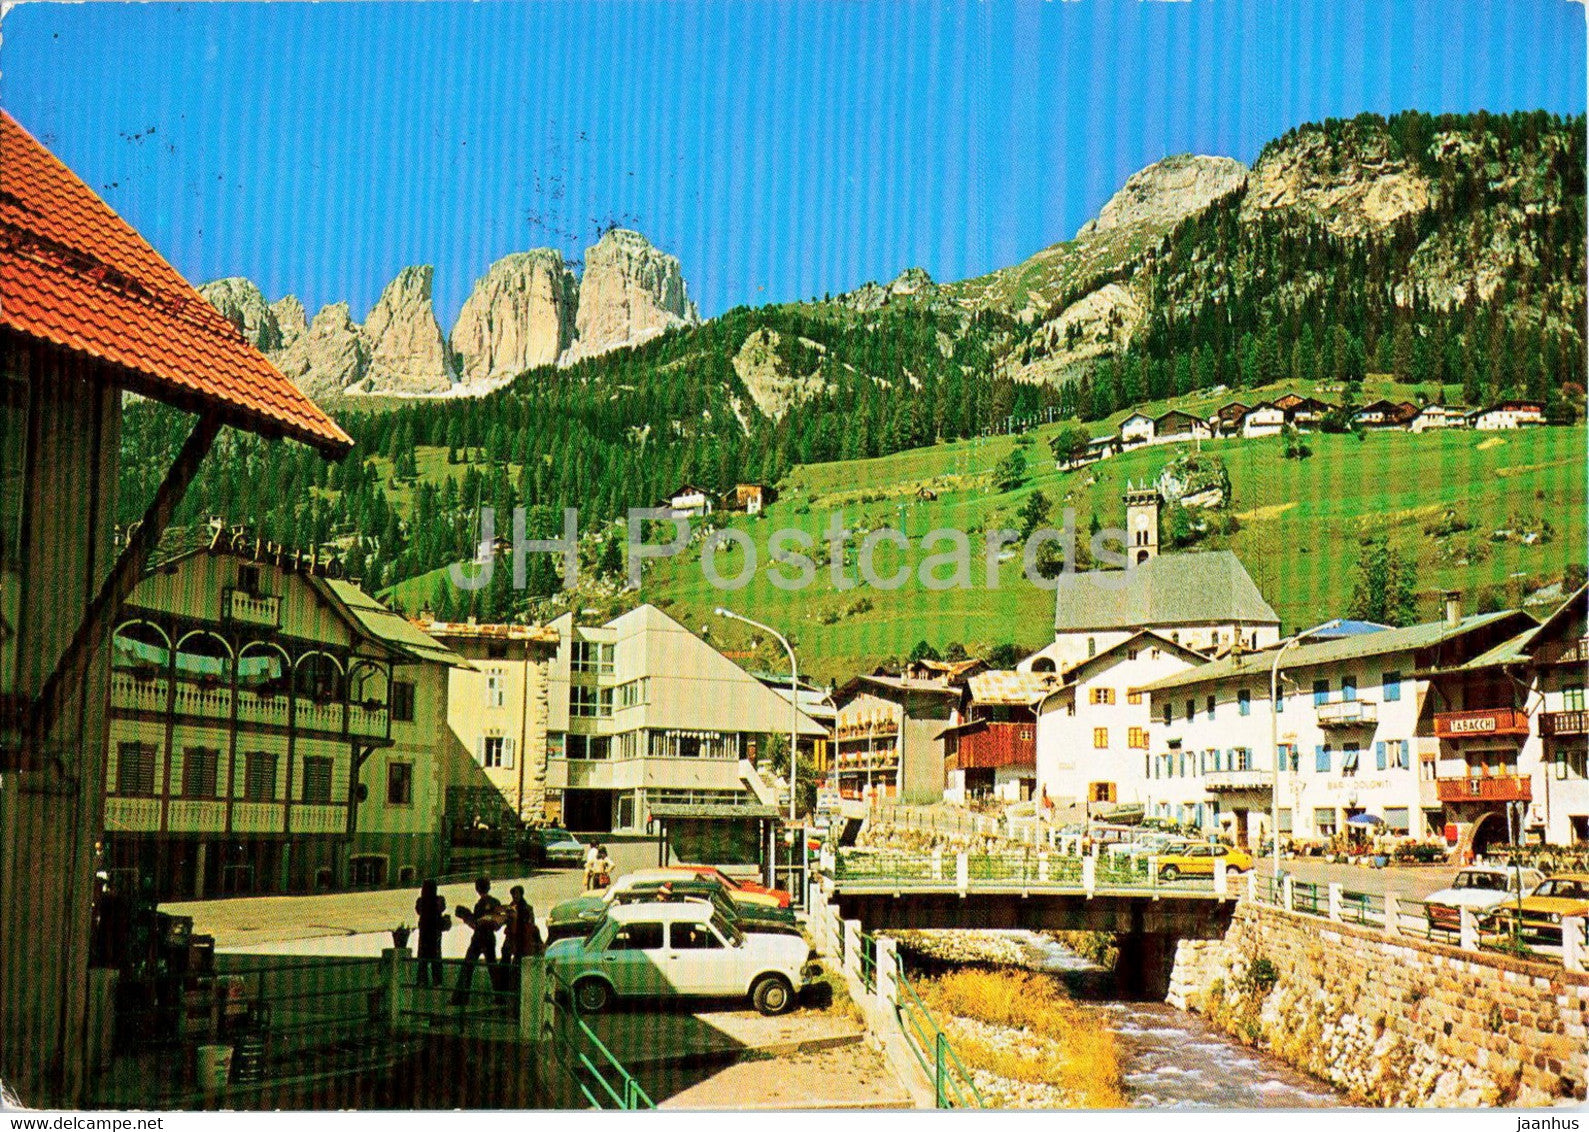 Val di Fassa - Dolomiti - Campitello 1442 m - car - 1982 - Italy - used - JH Postcards